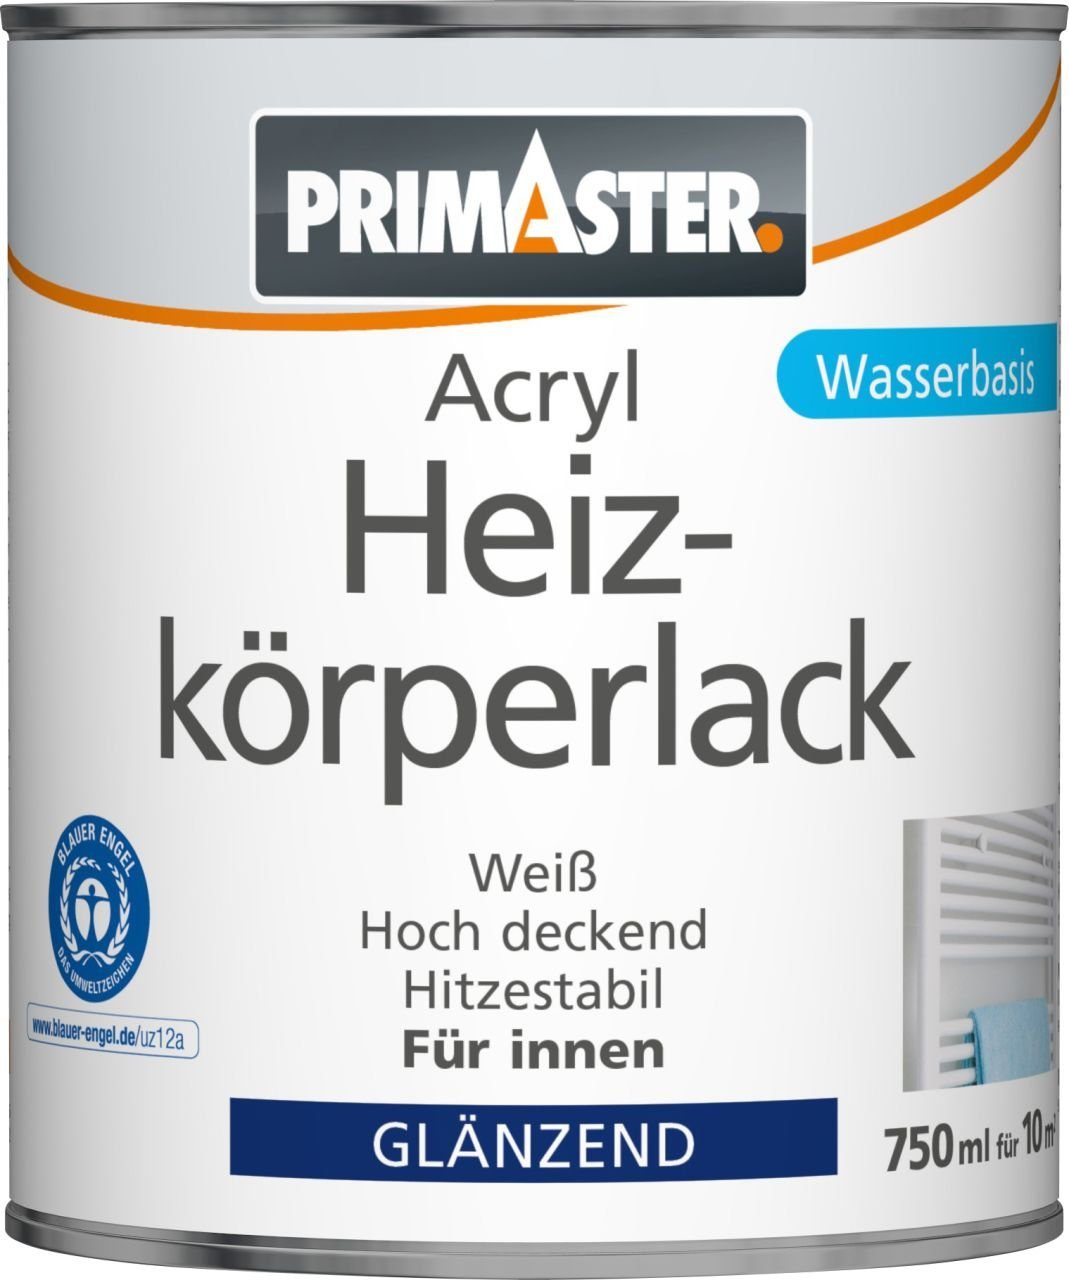 Primaster Heizkörperlack Primaster Heizkörperlack 750 weiß ml Acryl